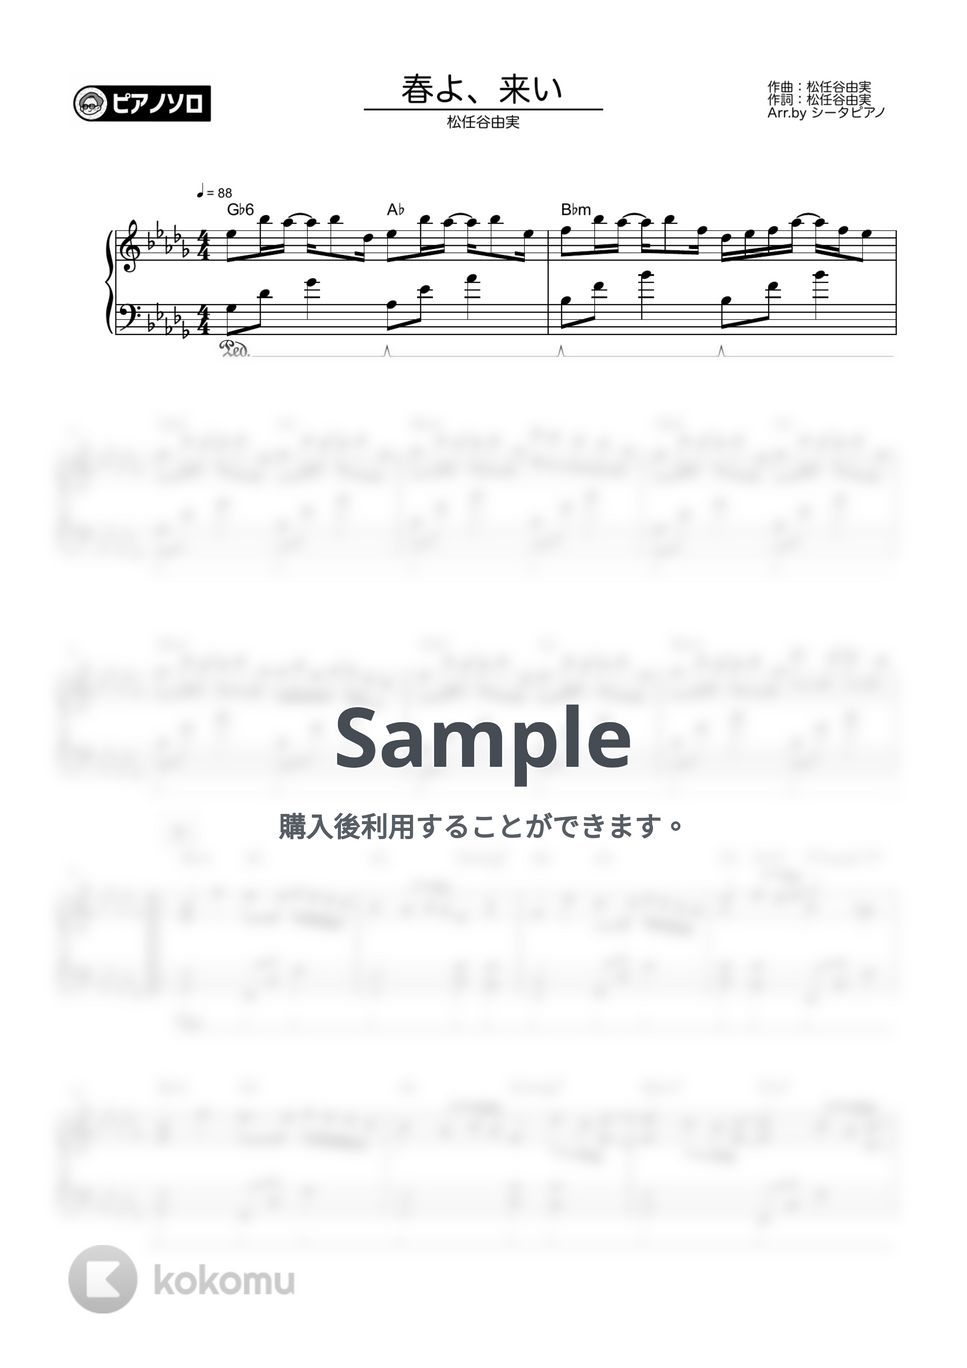 松任谷由実 - 春よ、来い by シータピアノ